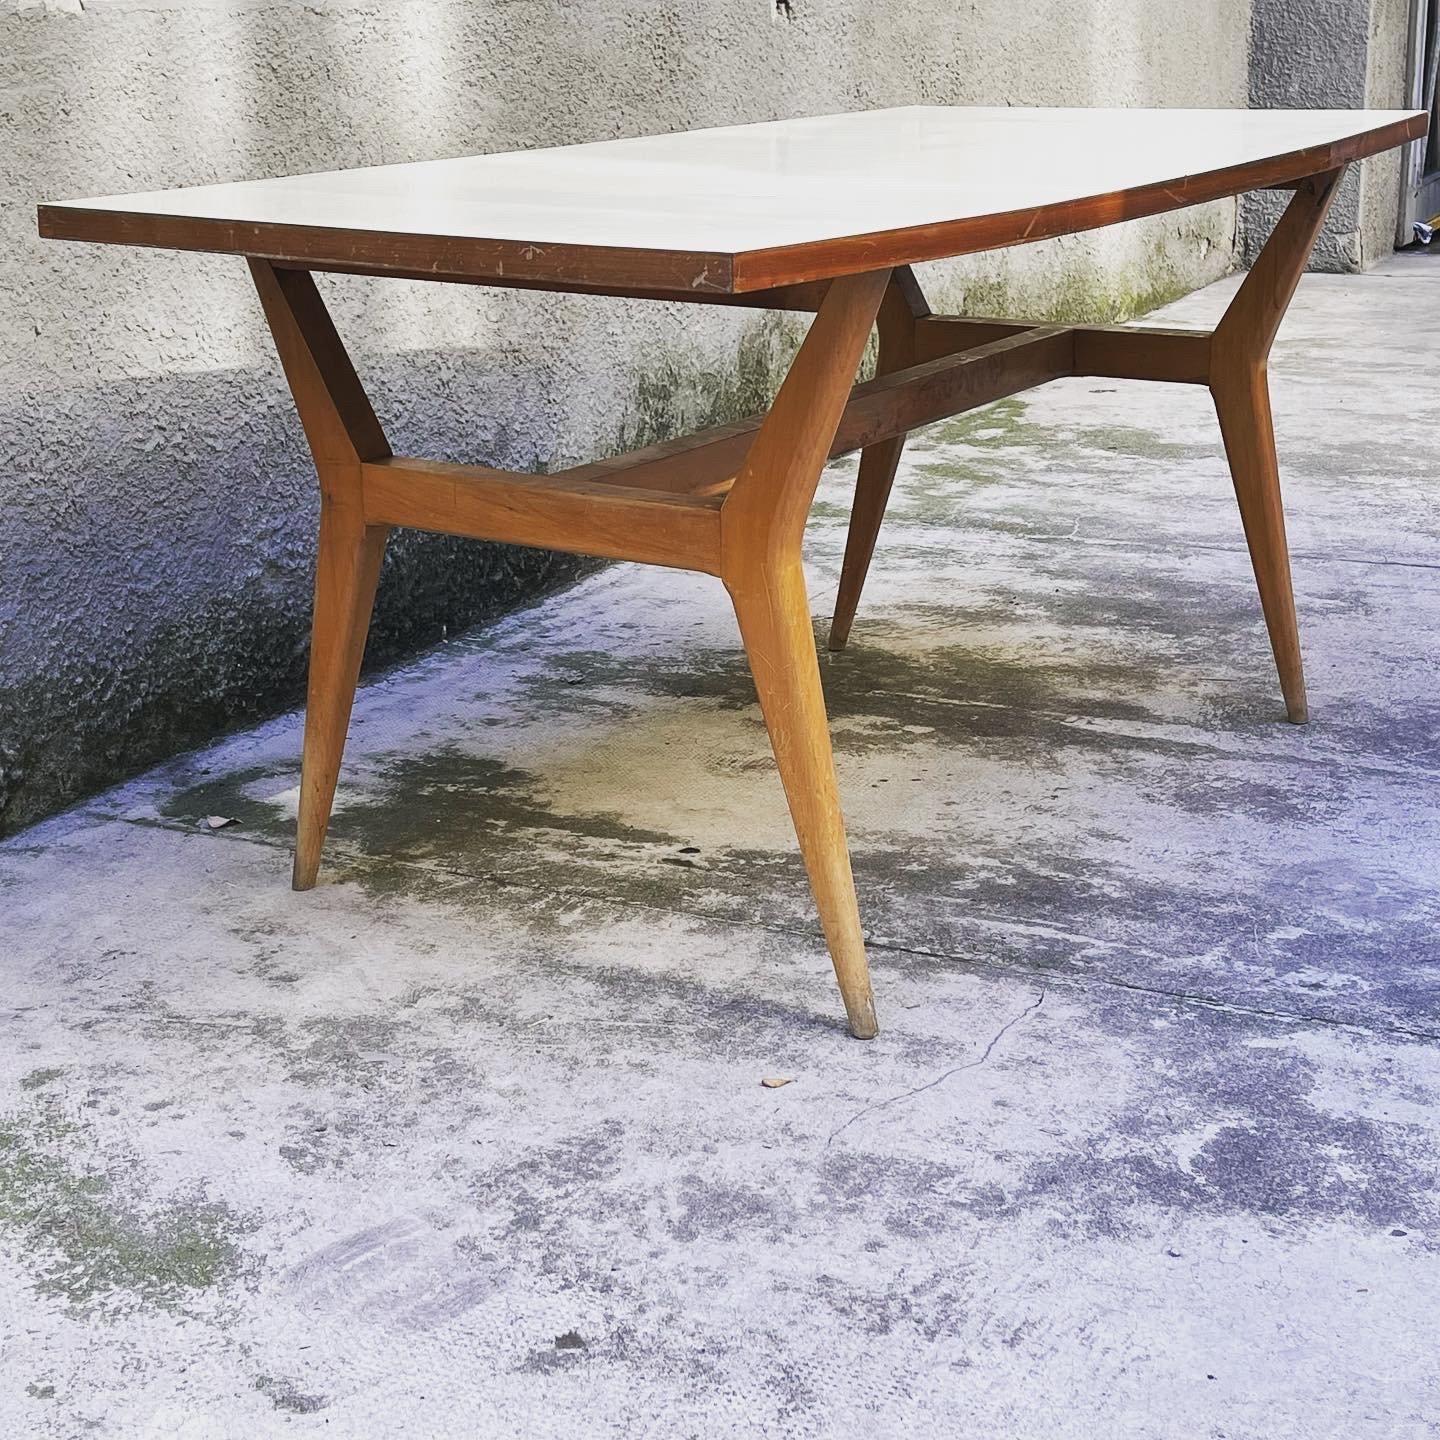 
Magnifique table de salle à manger en bois fabriquée en Italie en 1950. La table de salle à manger en bois a un beau plateau rectangulaire, les pieds sont légèrement incurvés vers l'extérieur. Le plateau de la table de salle à manger est recouvert